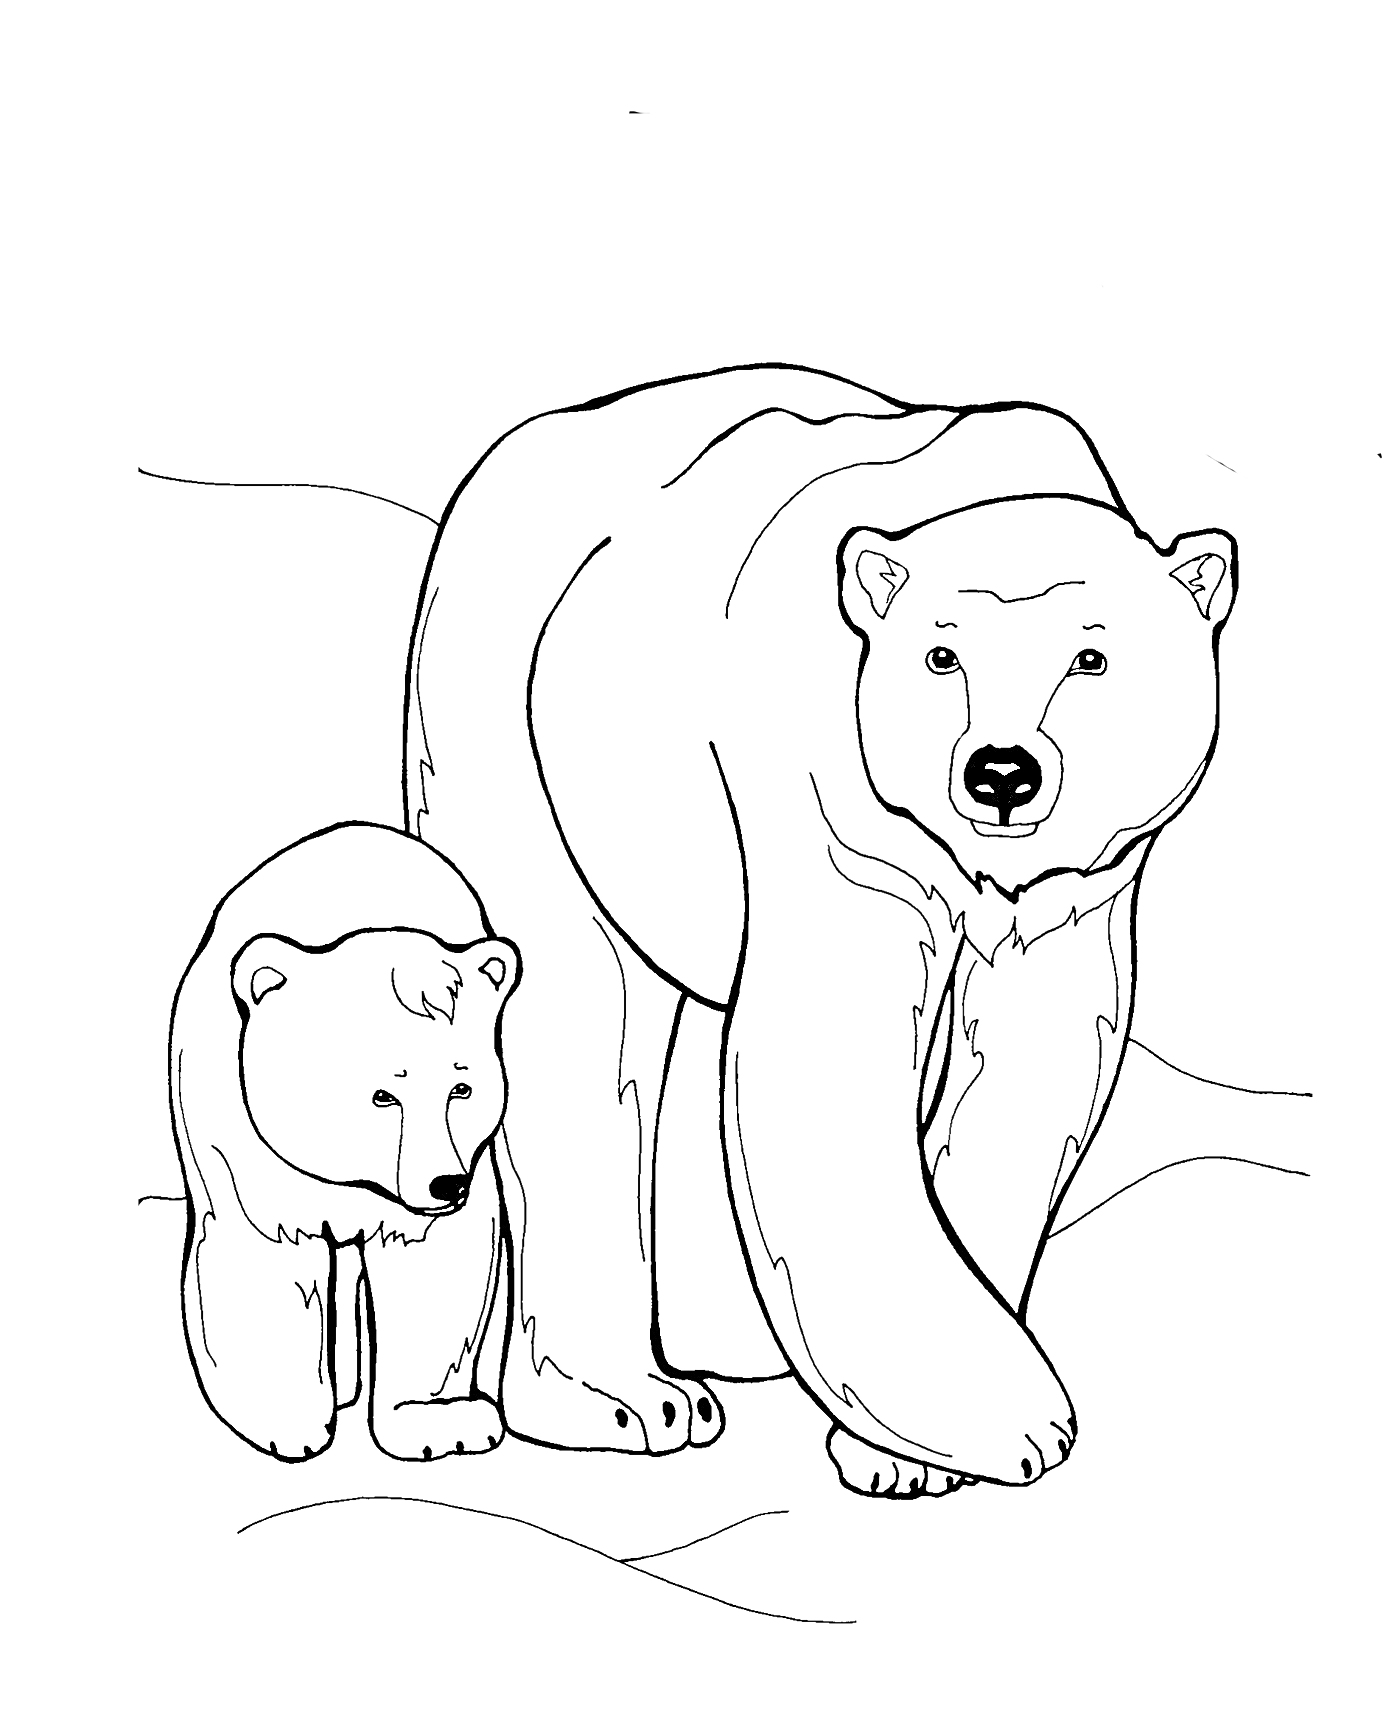 Раскраска Два белых медведя - взрослый медведь и медвежонок на фоне снежного пейзажа